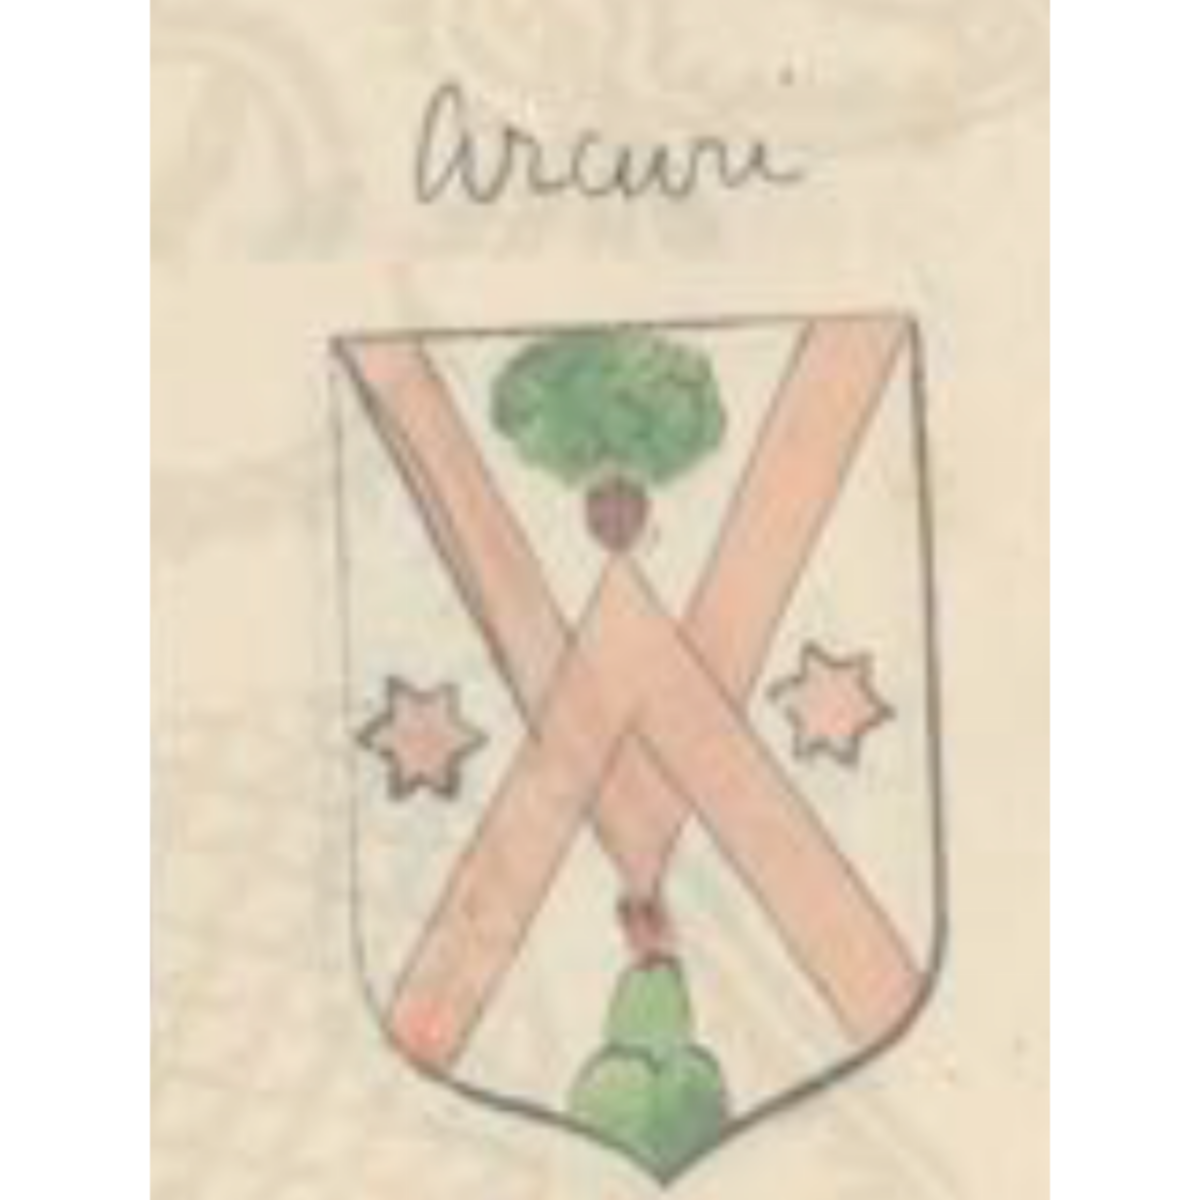 Wappen der FamilieArcuri